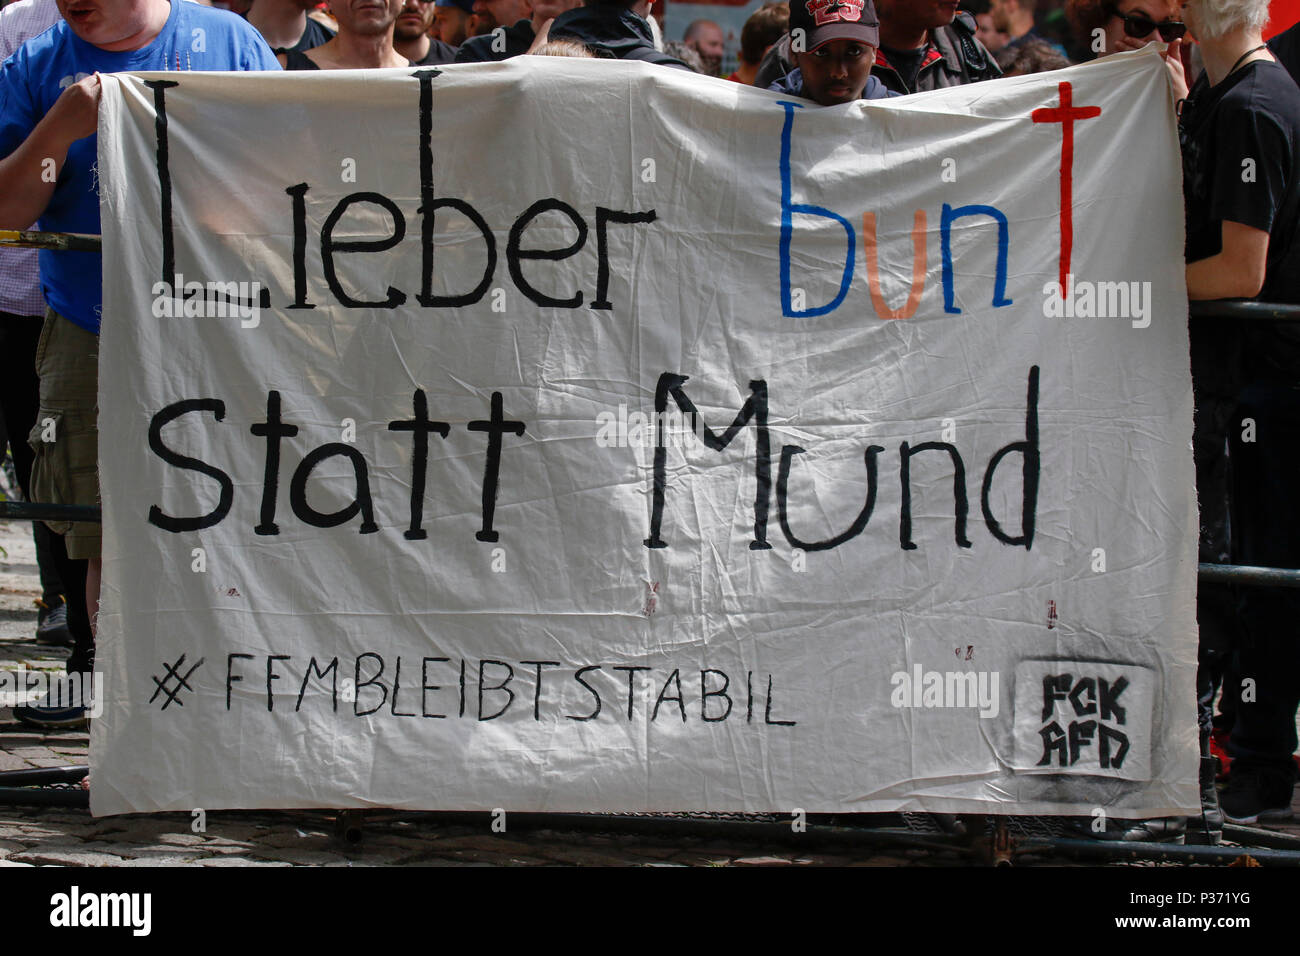 Frankfurt am Main, Deutschland. 17 Jun, 2018. Eine Demonstrantin hält ein Banner mit der Aufschrift "Besser als bunte Mund", ein Wortspiel auf das deutsche Wort für bunte (Bauch) und der Name des Veranstalters (Mund). Rund 50 Rechtsextreme Demonstranten folgten dem Aufruf von Heidi Mund, der ehemalige Organisator der FRAGIDA Protest in Frankfurt, auf der neu gestalteten "Tag der Patrioten" (Tag der Patrioten), um sich gegen die Regierung und die Flüchtlinge außerhalb der St. Paul's Kirche in Frankfurt, ein Symbol für die deutsche Demokratie. Nsä der ehemaligen Tag der Deutschen Einheit Quelle: PACIFIC PRESS/Alamy Leben Nachrichten Protest verwenden Stockfoto